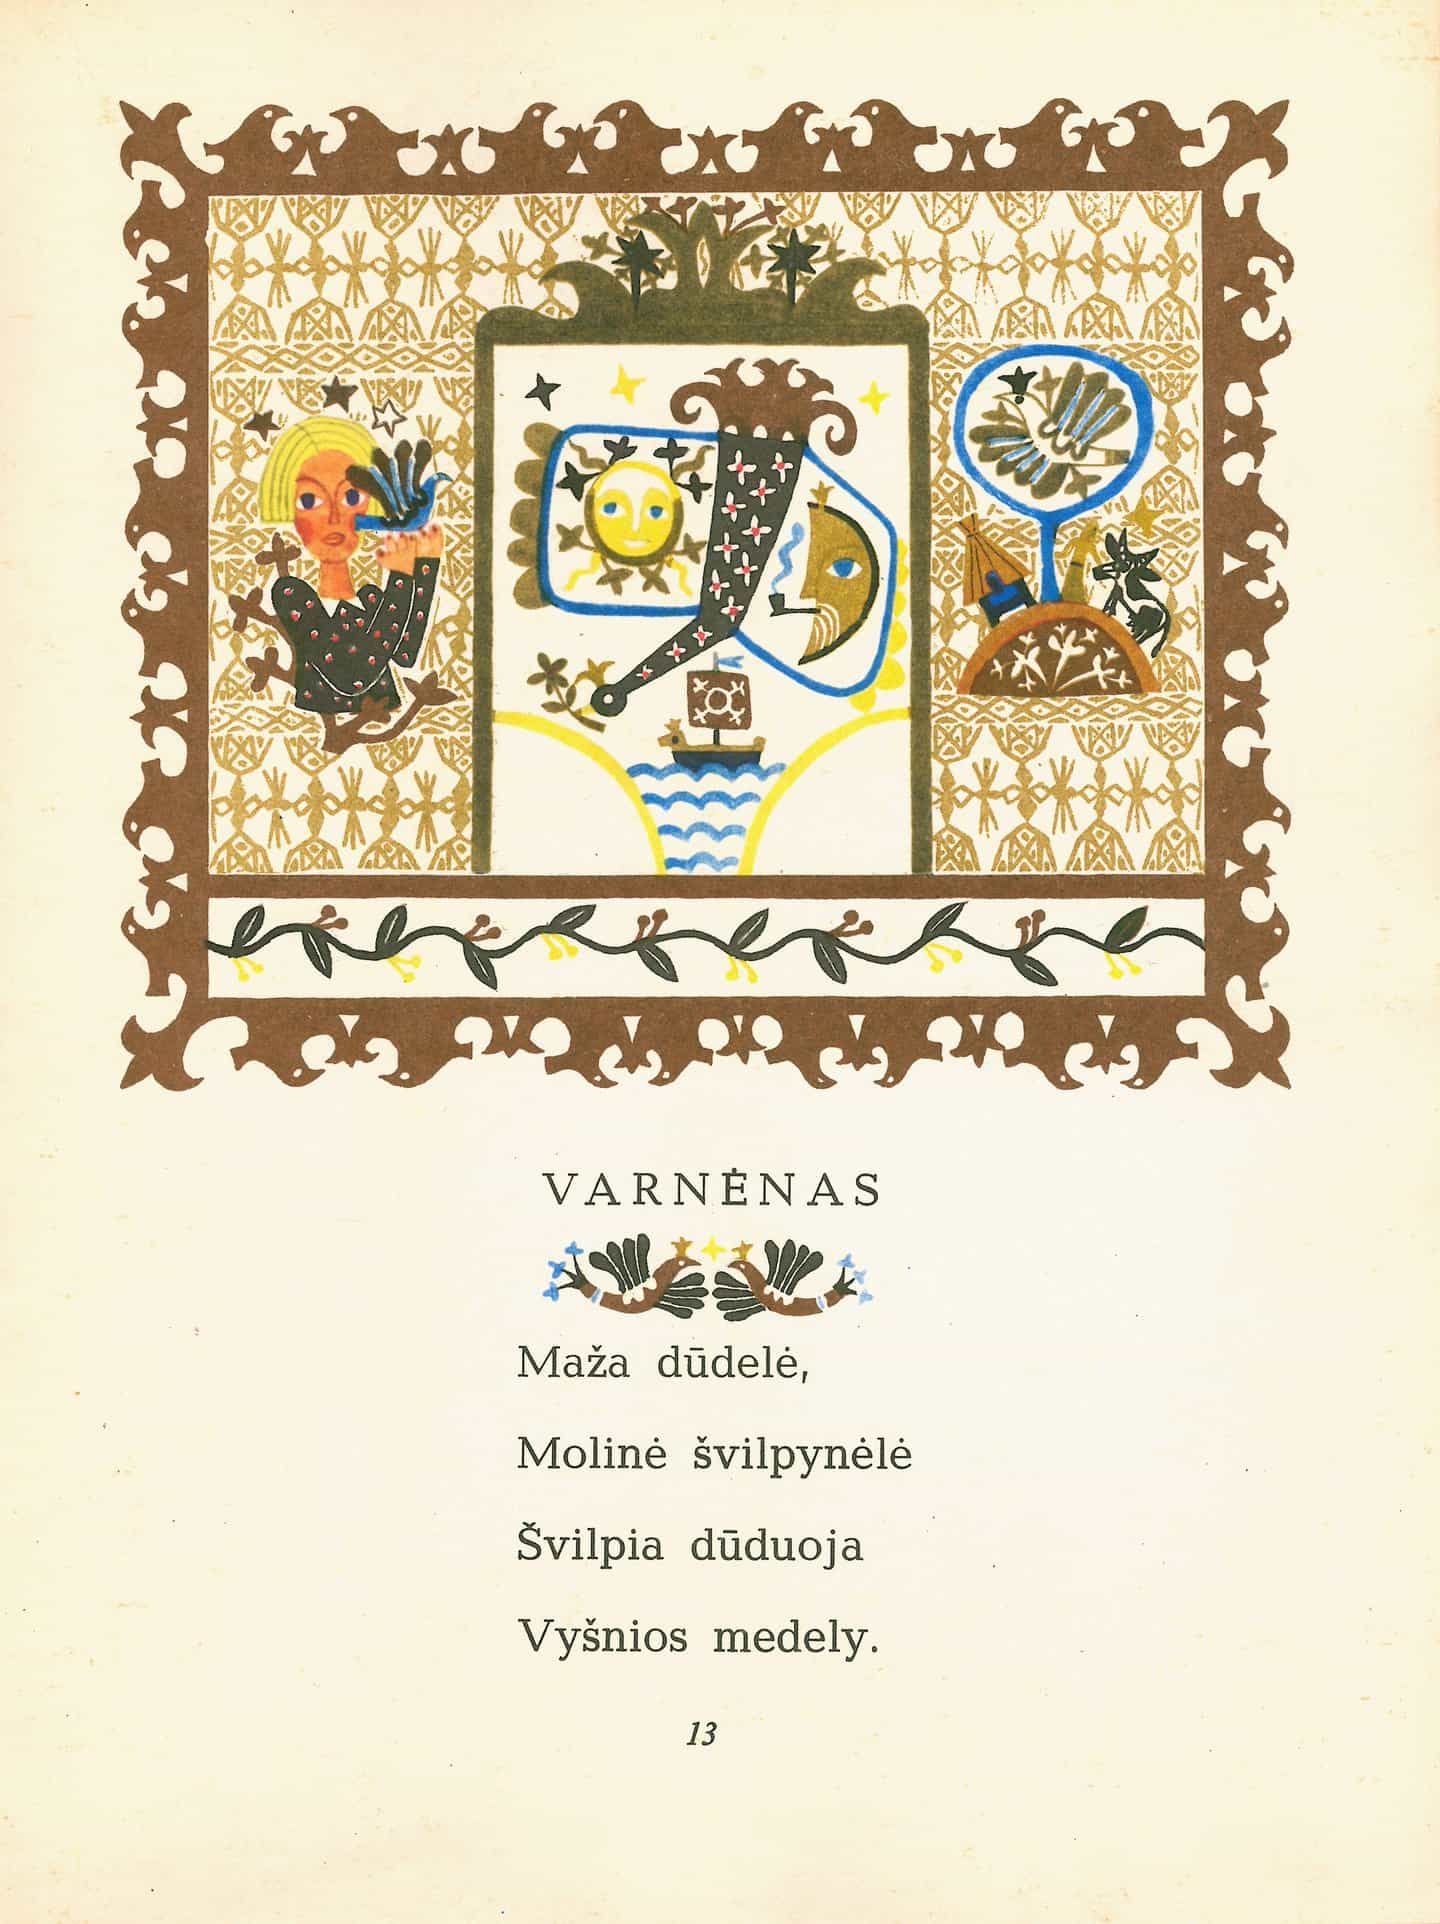 Mozaika: Leonardas Gutauskas en el libro Vasko Dvarelis, 1970